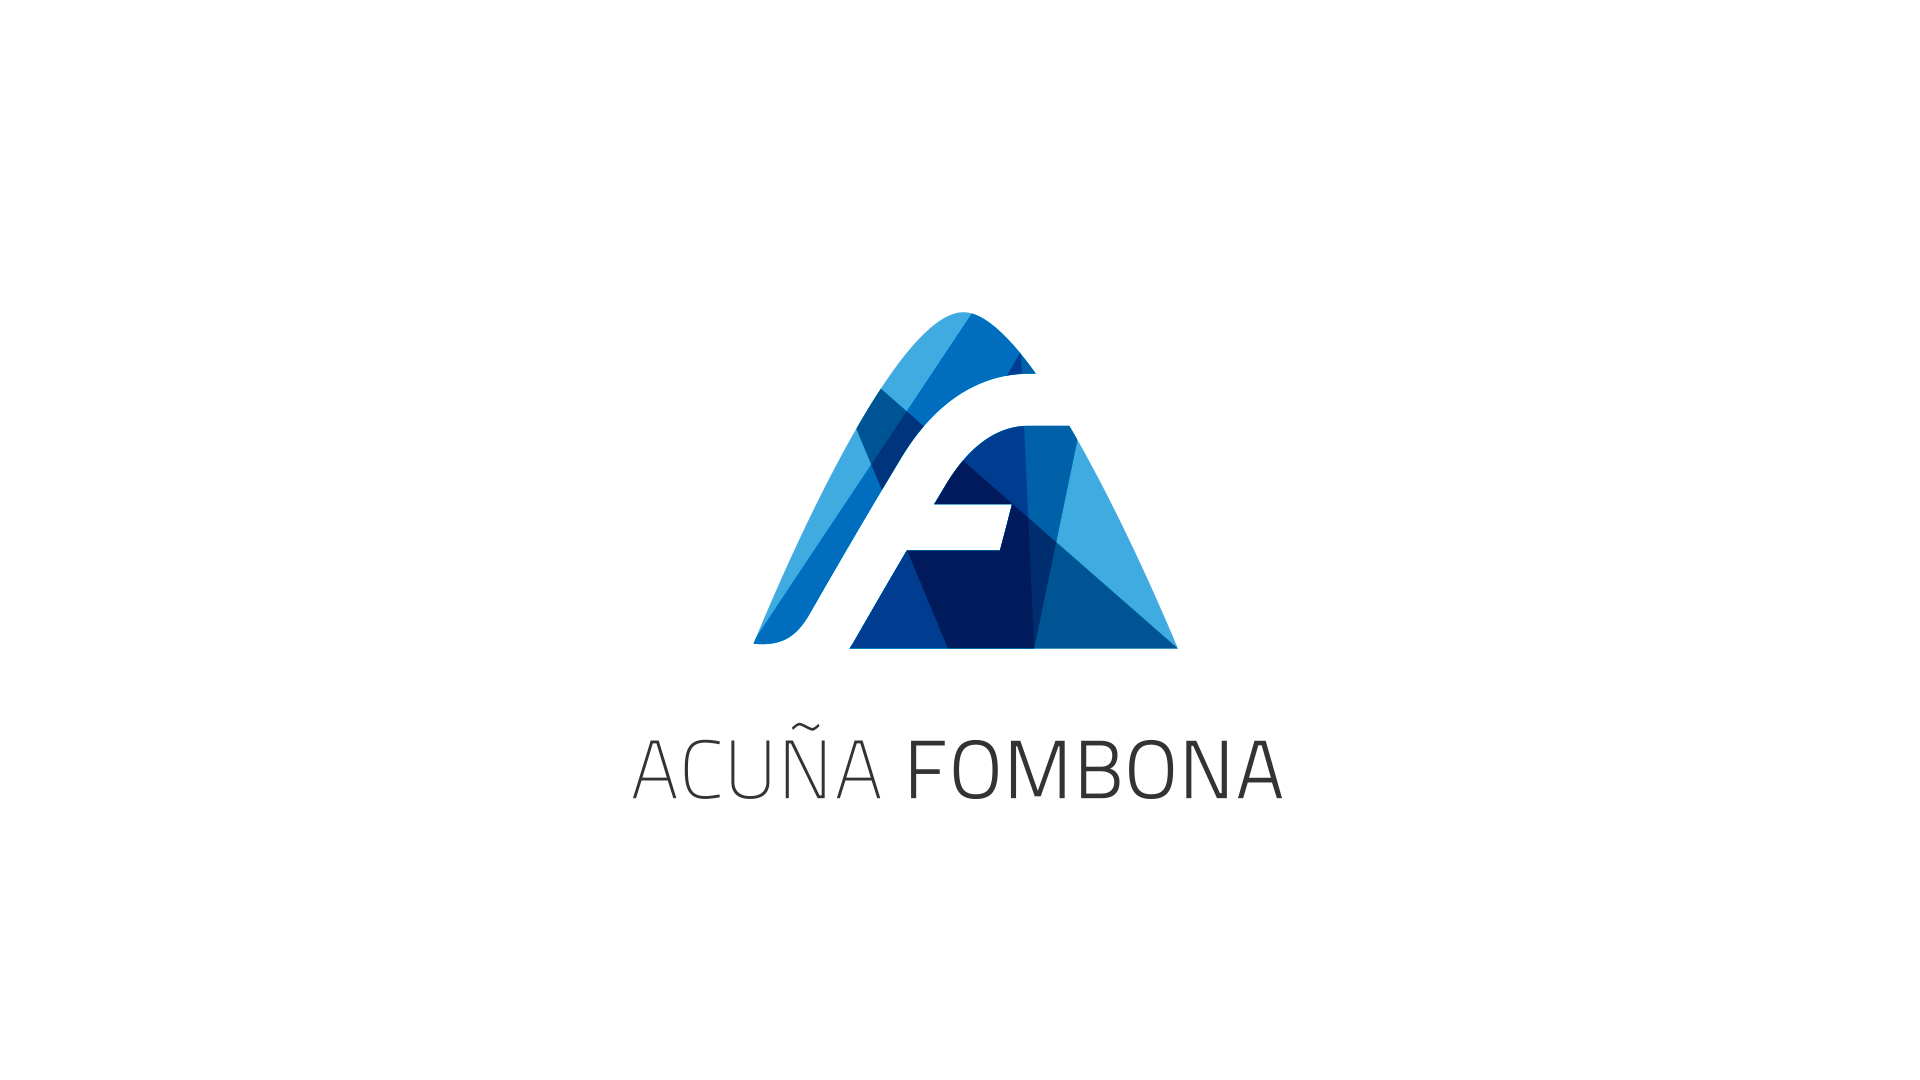 Acuna Fombona